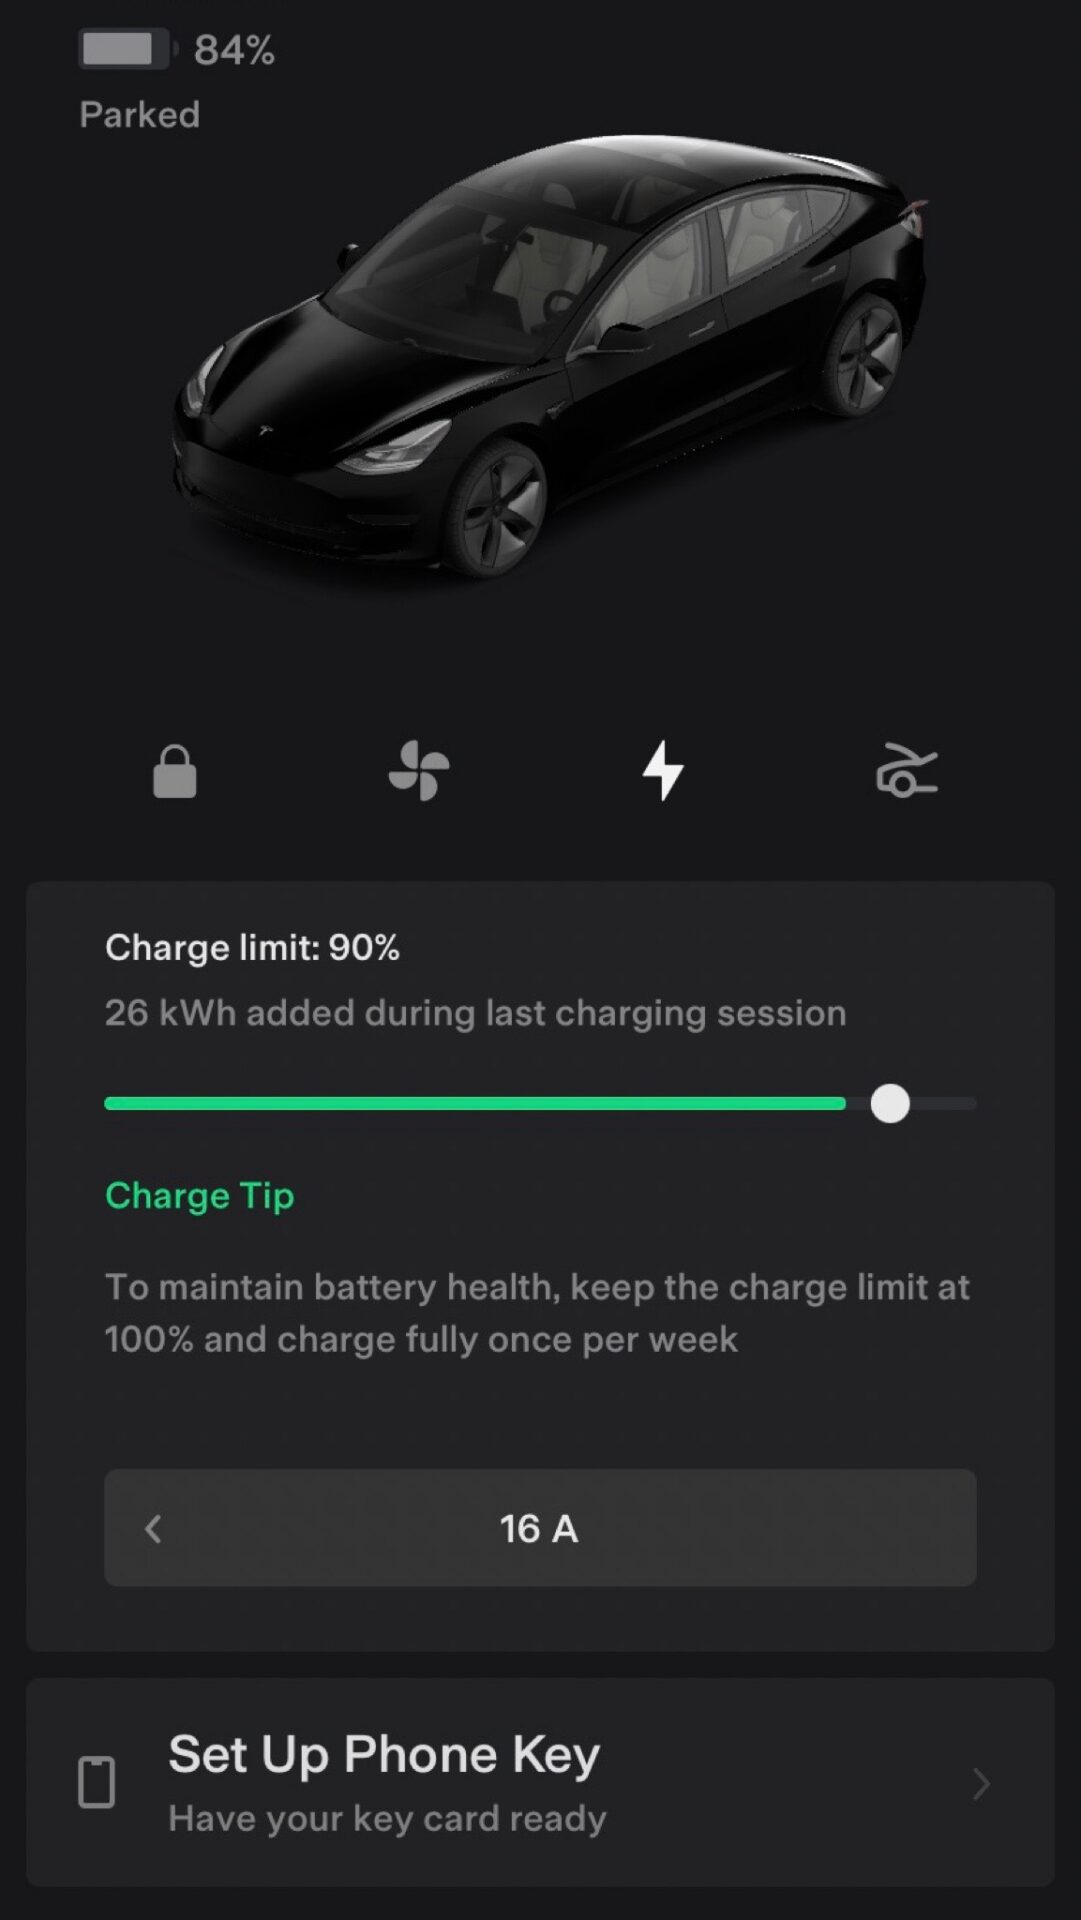 Tesla app features